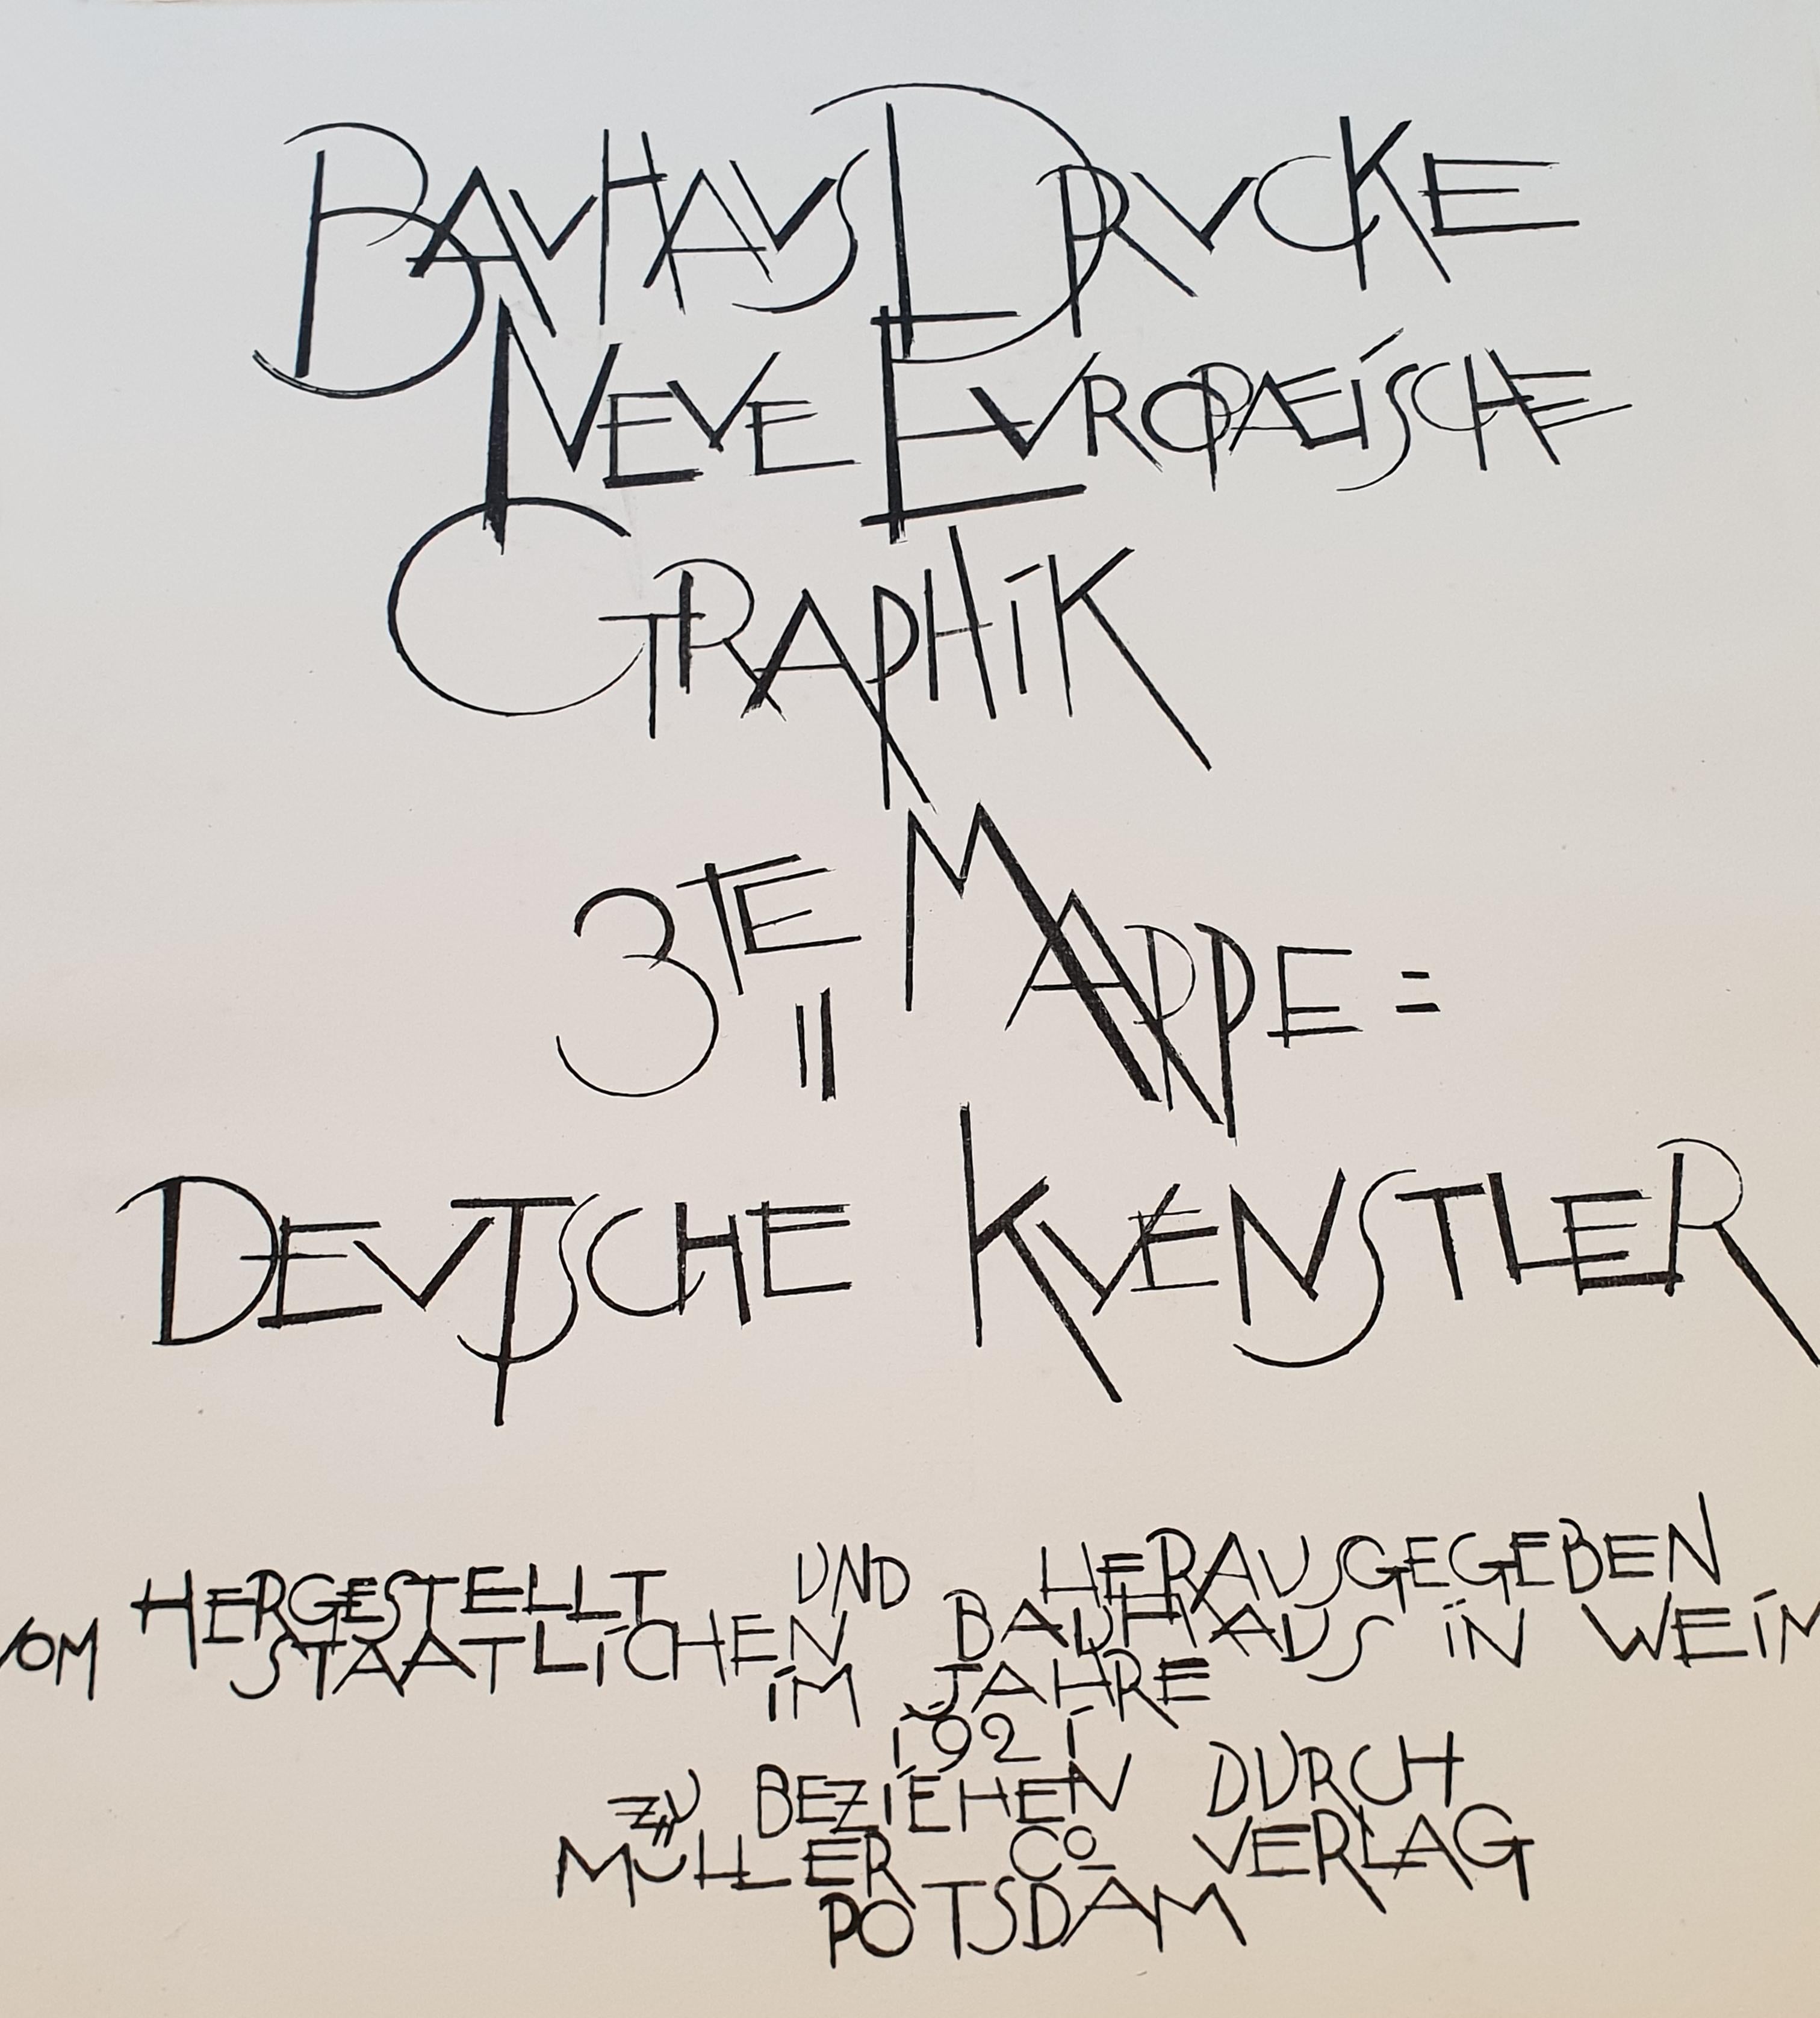 Le Bauhaus « Neuf europische Graphik », troisième portefeuille d'artistes allemands